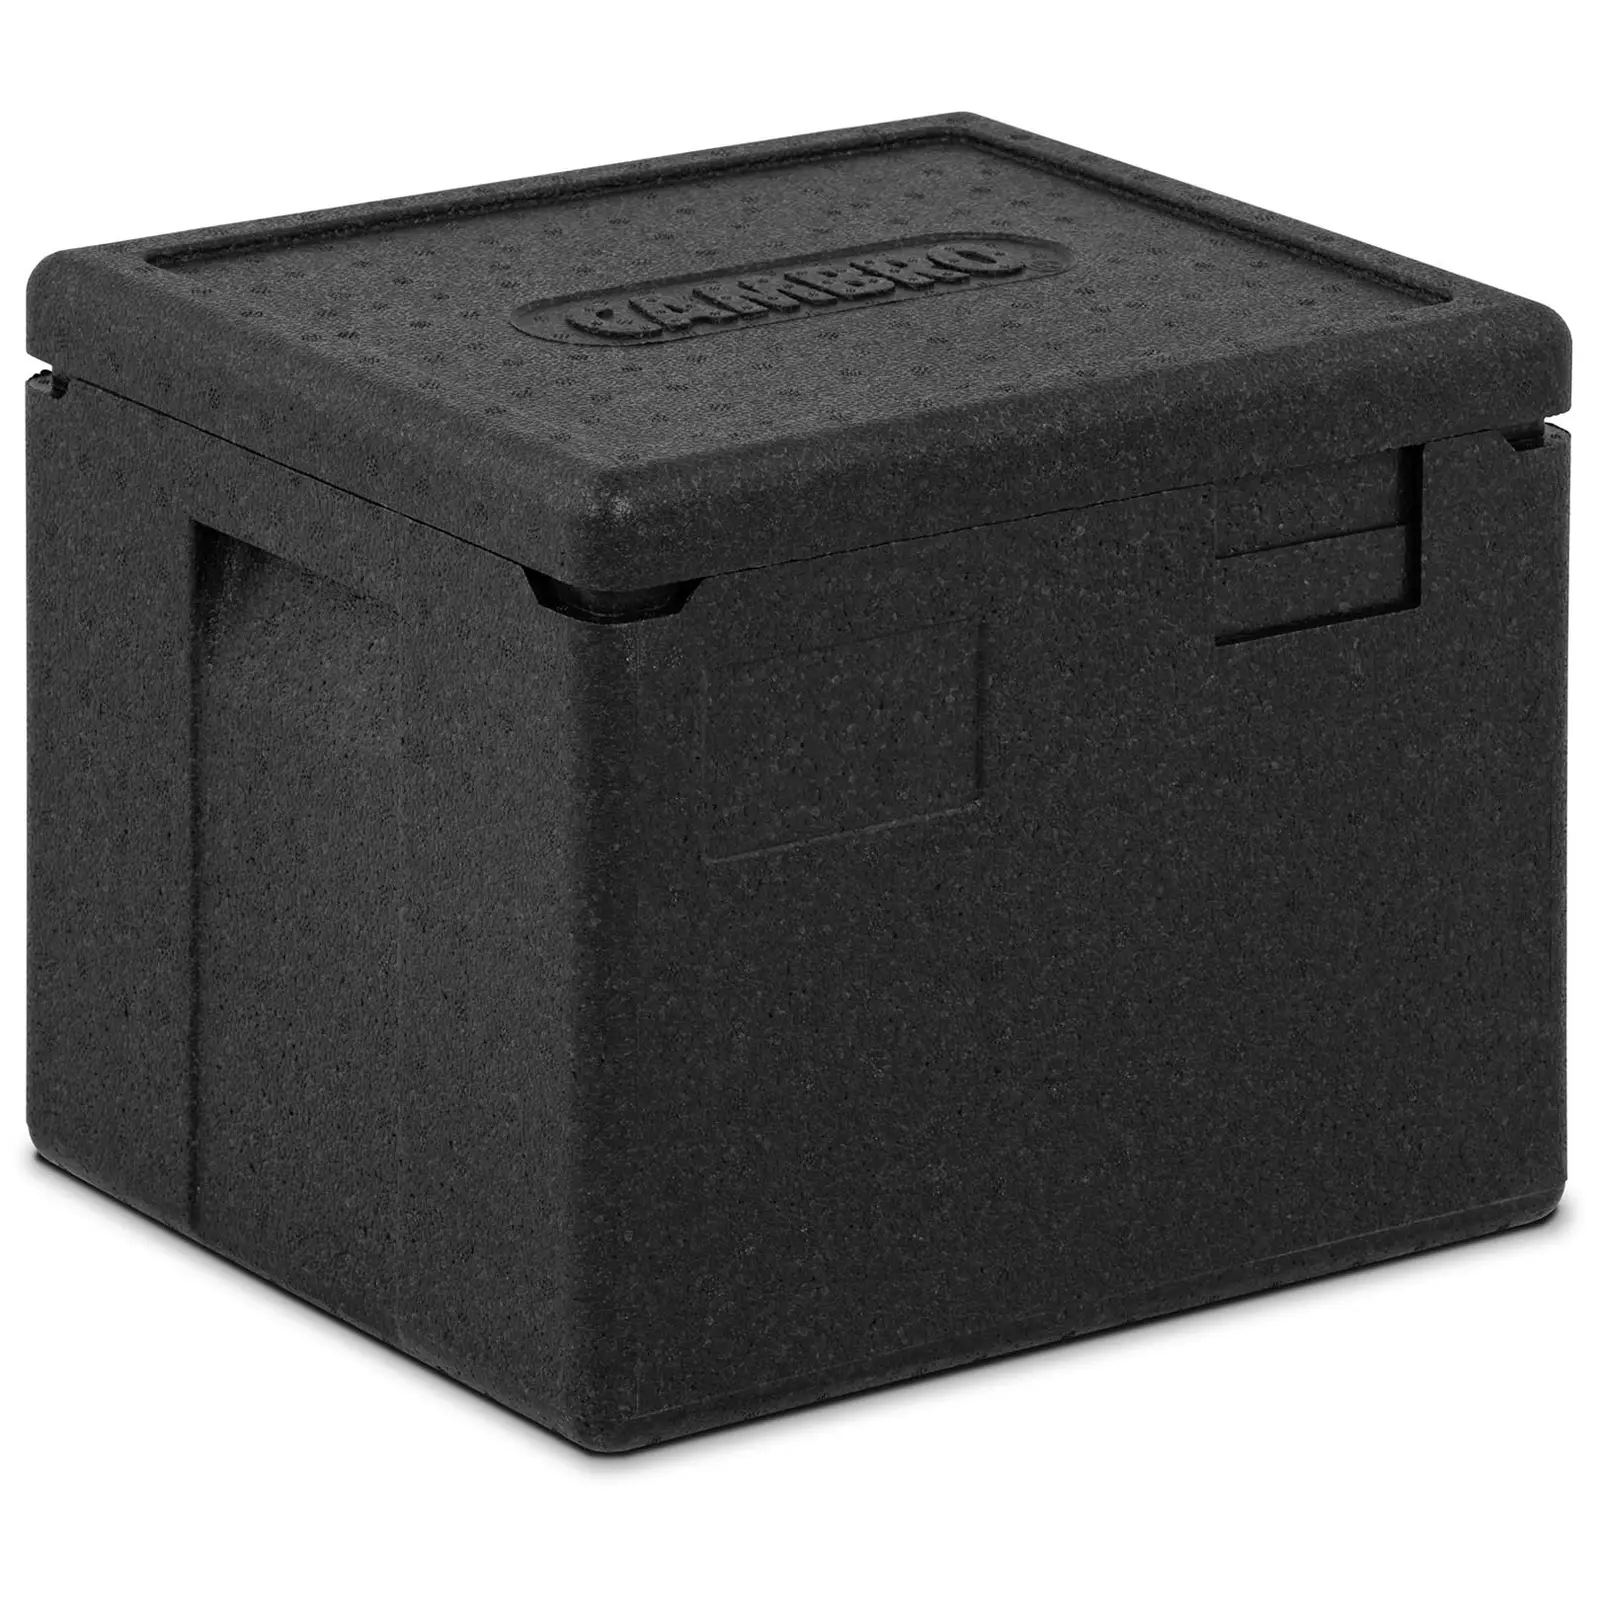 Termobox - horní plnění - pro GN nádoby 1/2 (hloubka 20 cm)